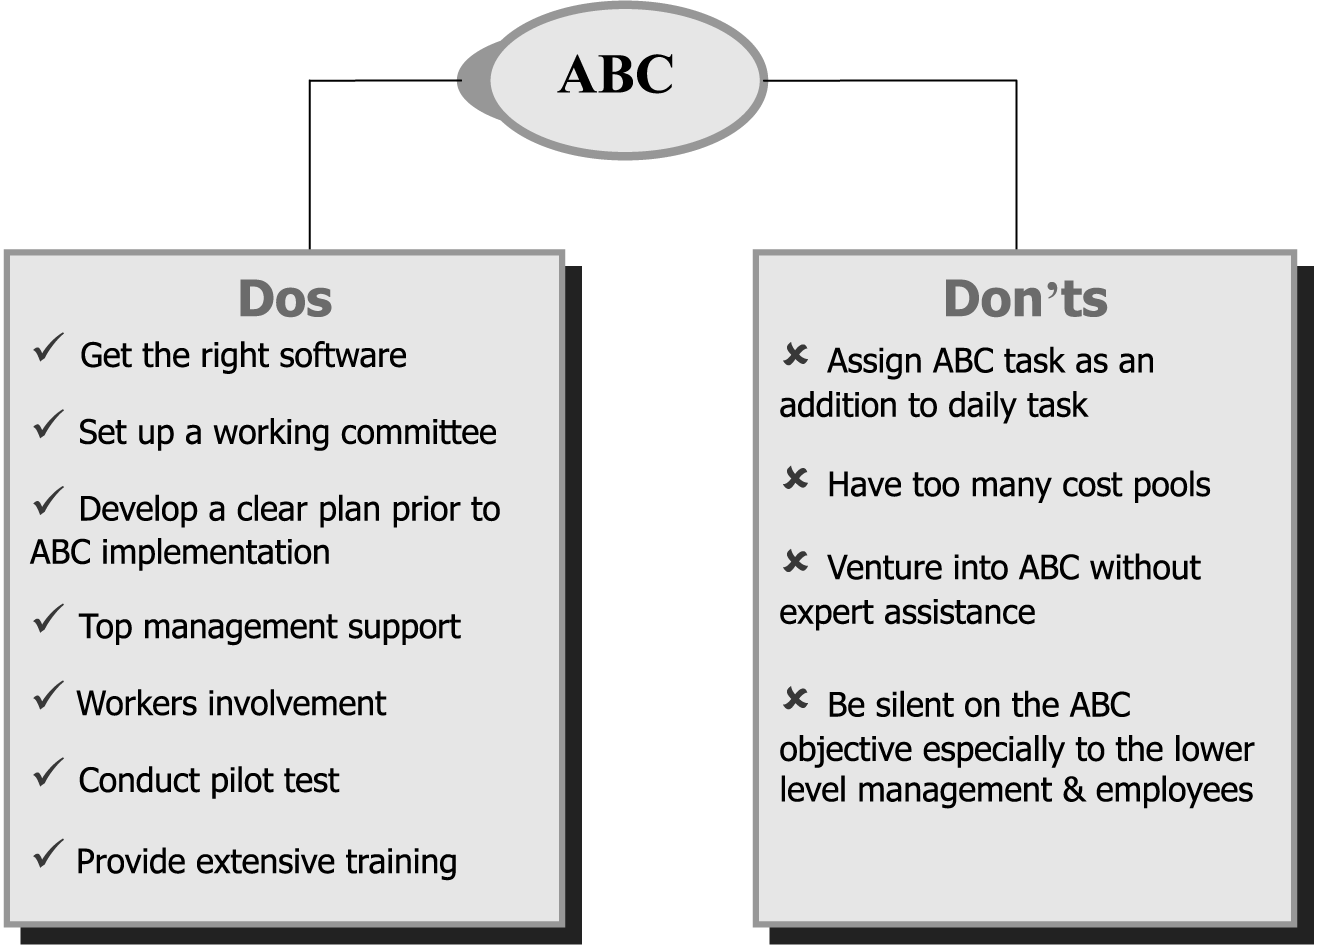 طراحی و کاربرد سیستم هزینه یابی بر مبنای فعالیت( ABC)  جهت محاسبه بهای تمام  شده  خدمات در بیمارستانهای دولتی